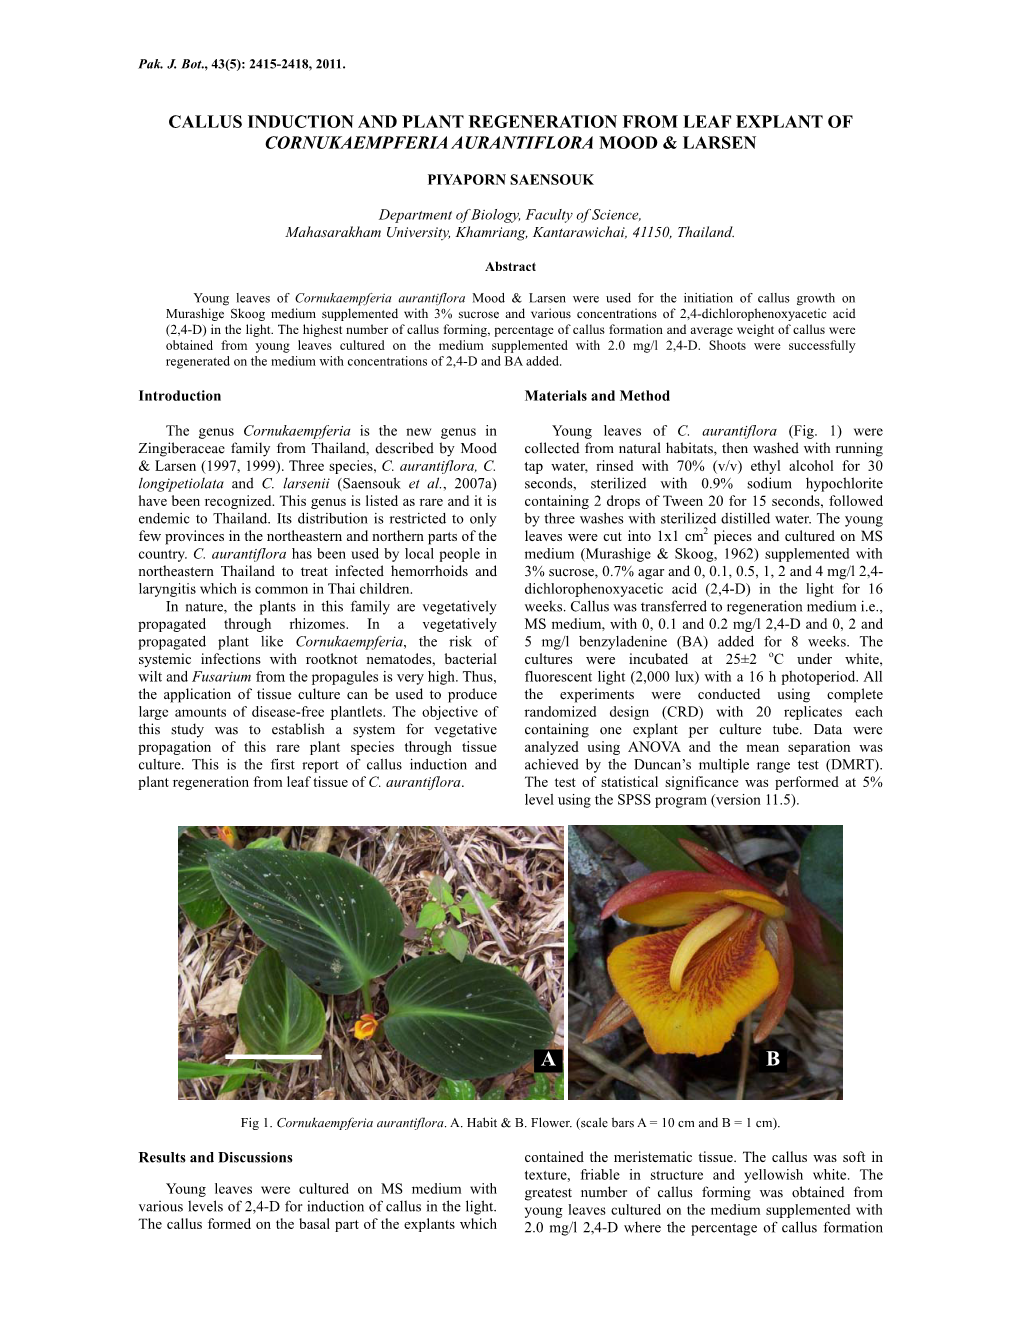 Callus Induction and Plant Regeneration from Leaf Explant of Cornukaempferia Aurantiflora Mood & Larsen